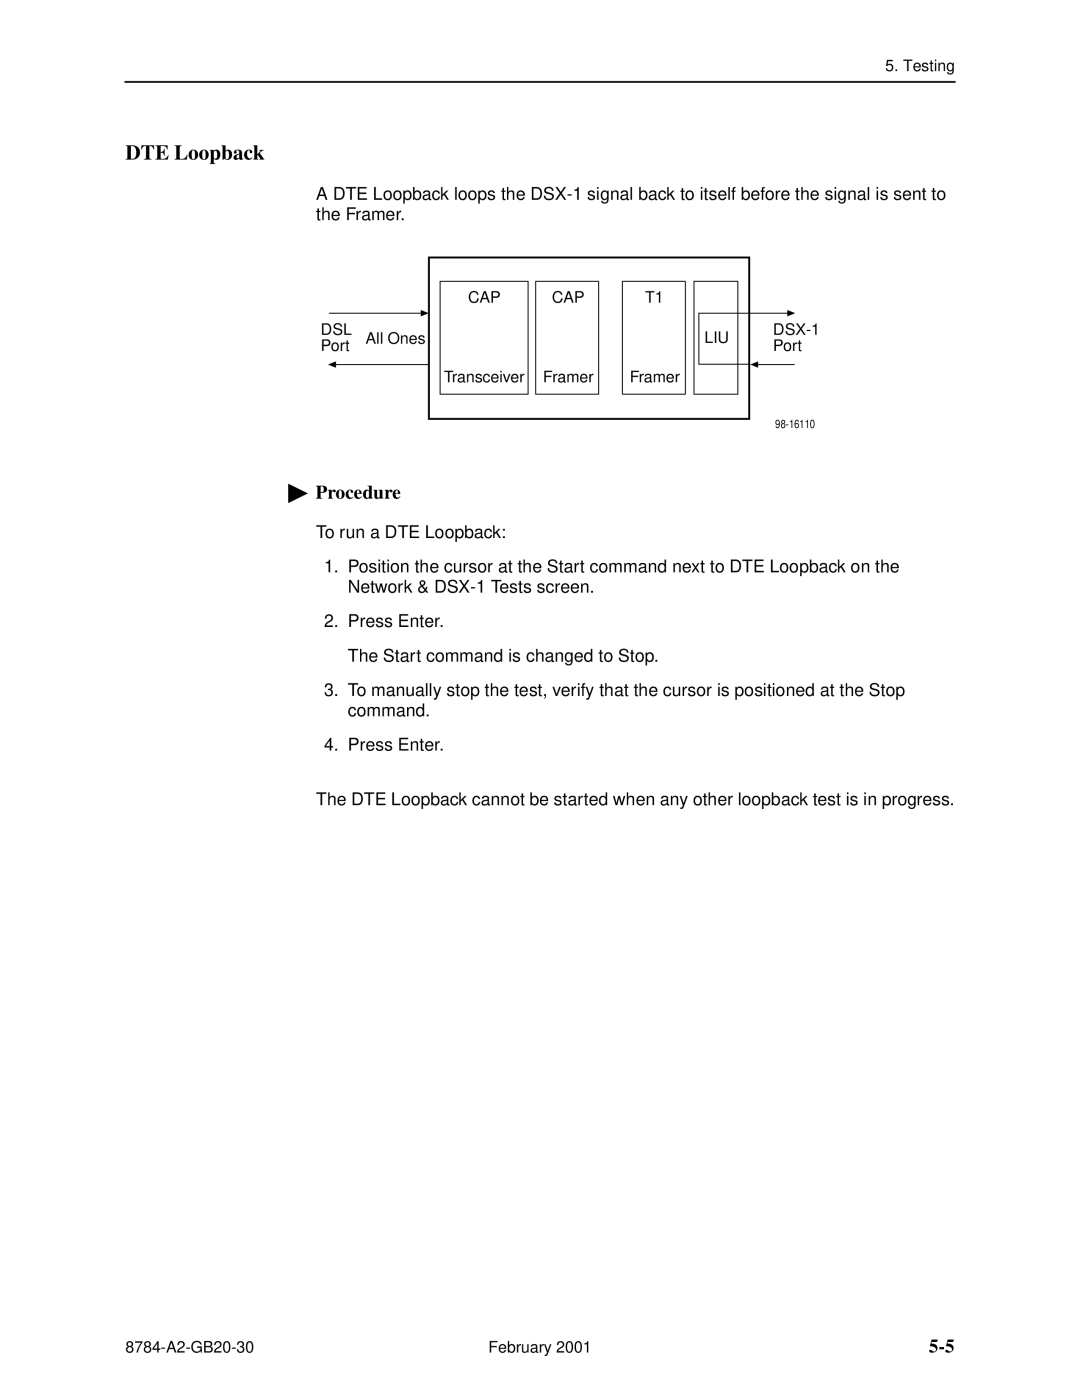 Paradyne 8784 manual DTE Loopback, Procedure 